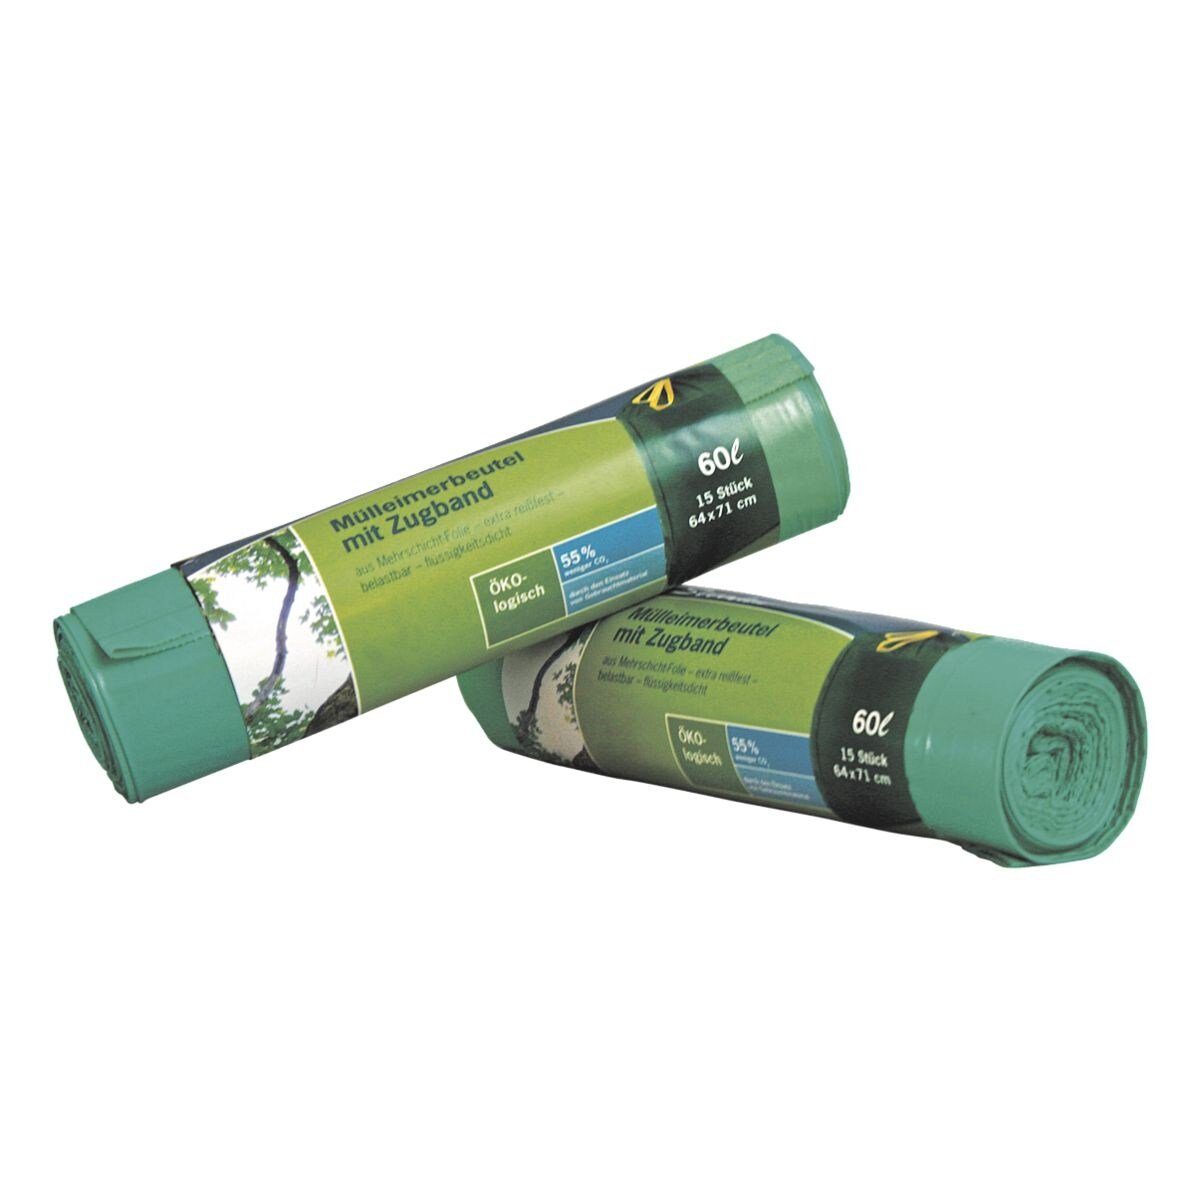 Liter, Zugband, Recycling-Material 100% 15 SECOLAN mit Stück/Rolle, grün, Müllbeutel, 60